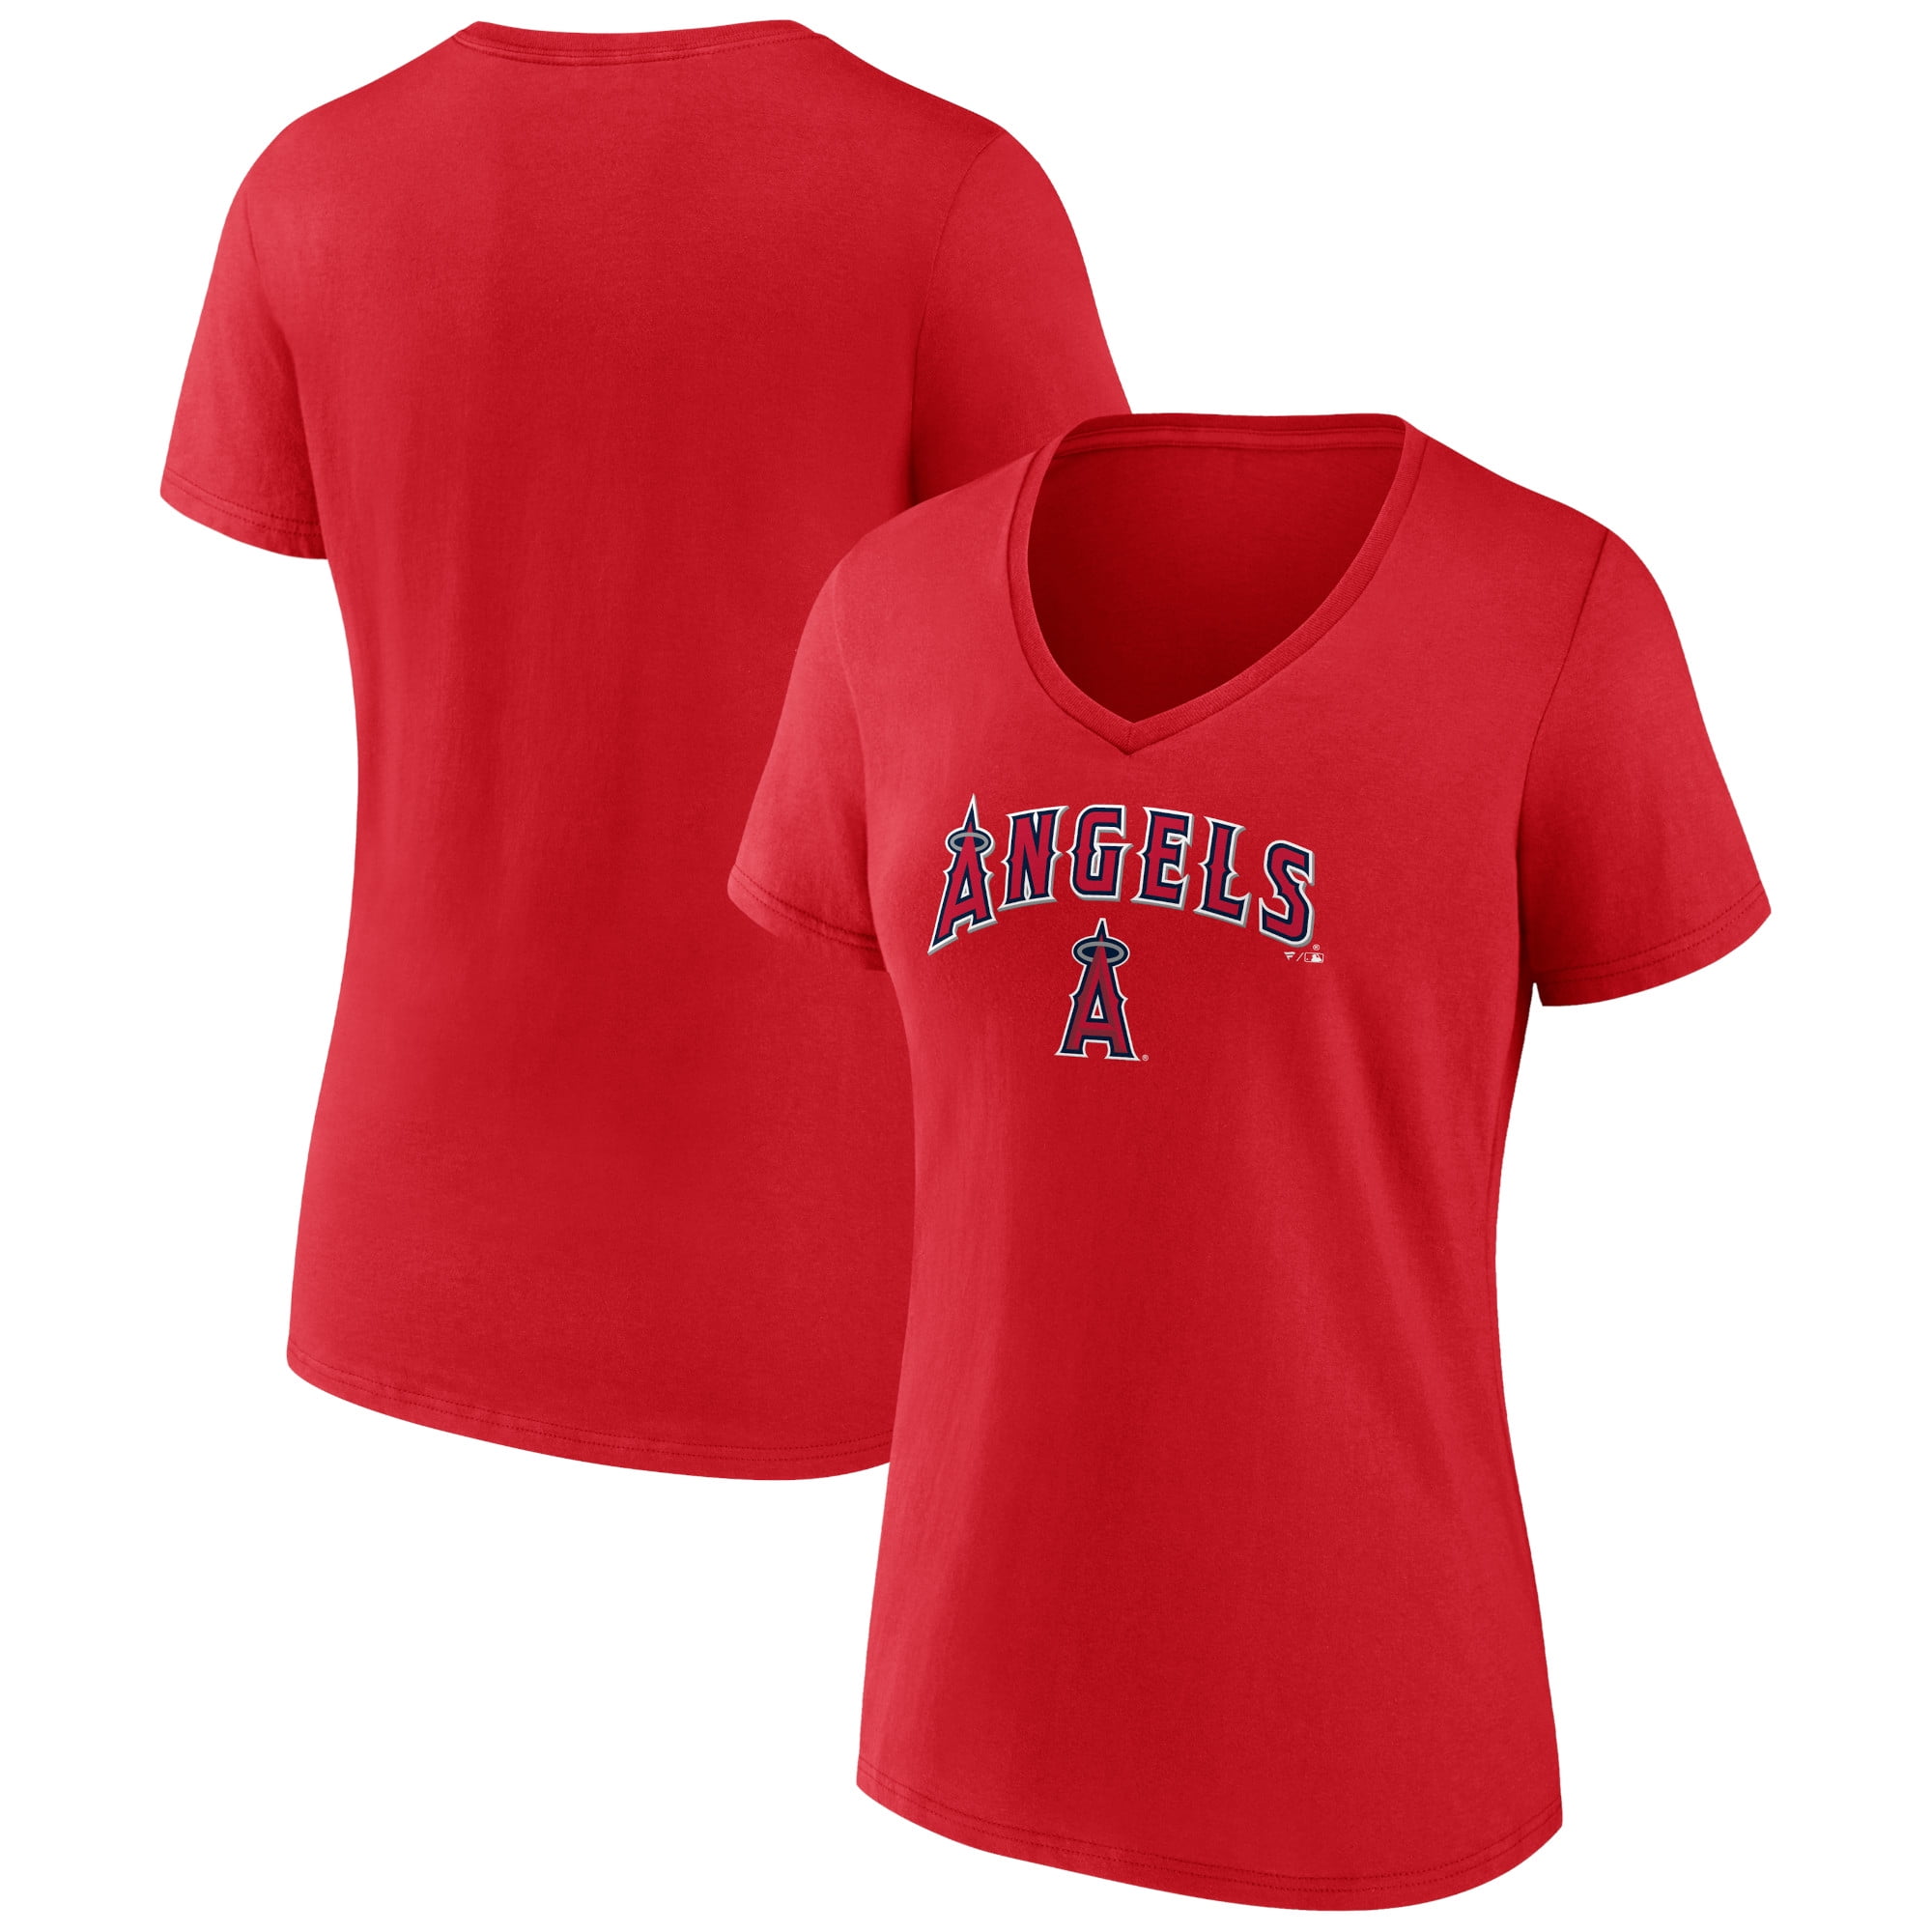 Women's Fanatics Branded Red Atlanta Braves Team Lockup T-Shirt 